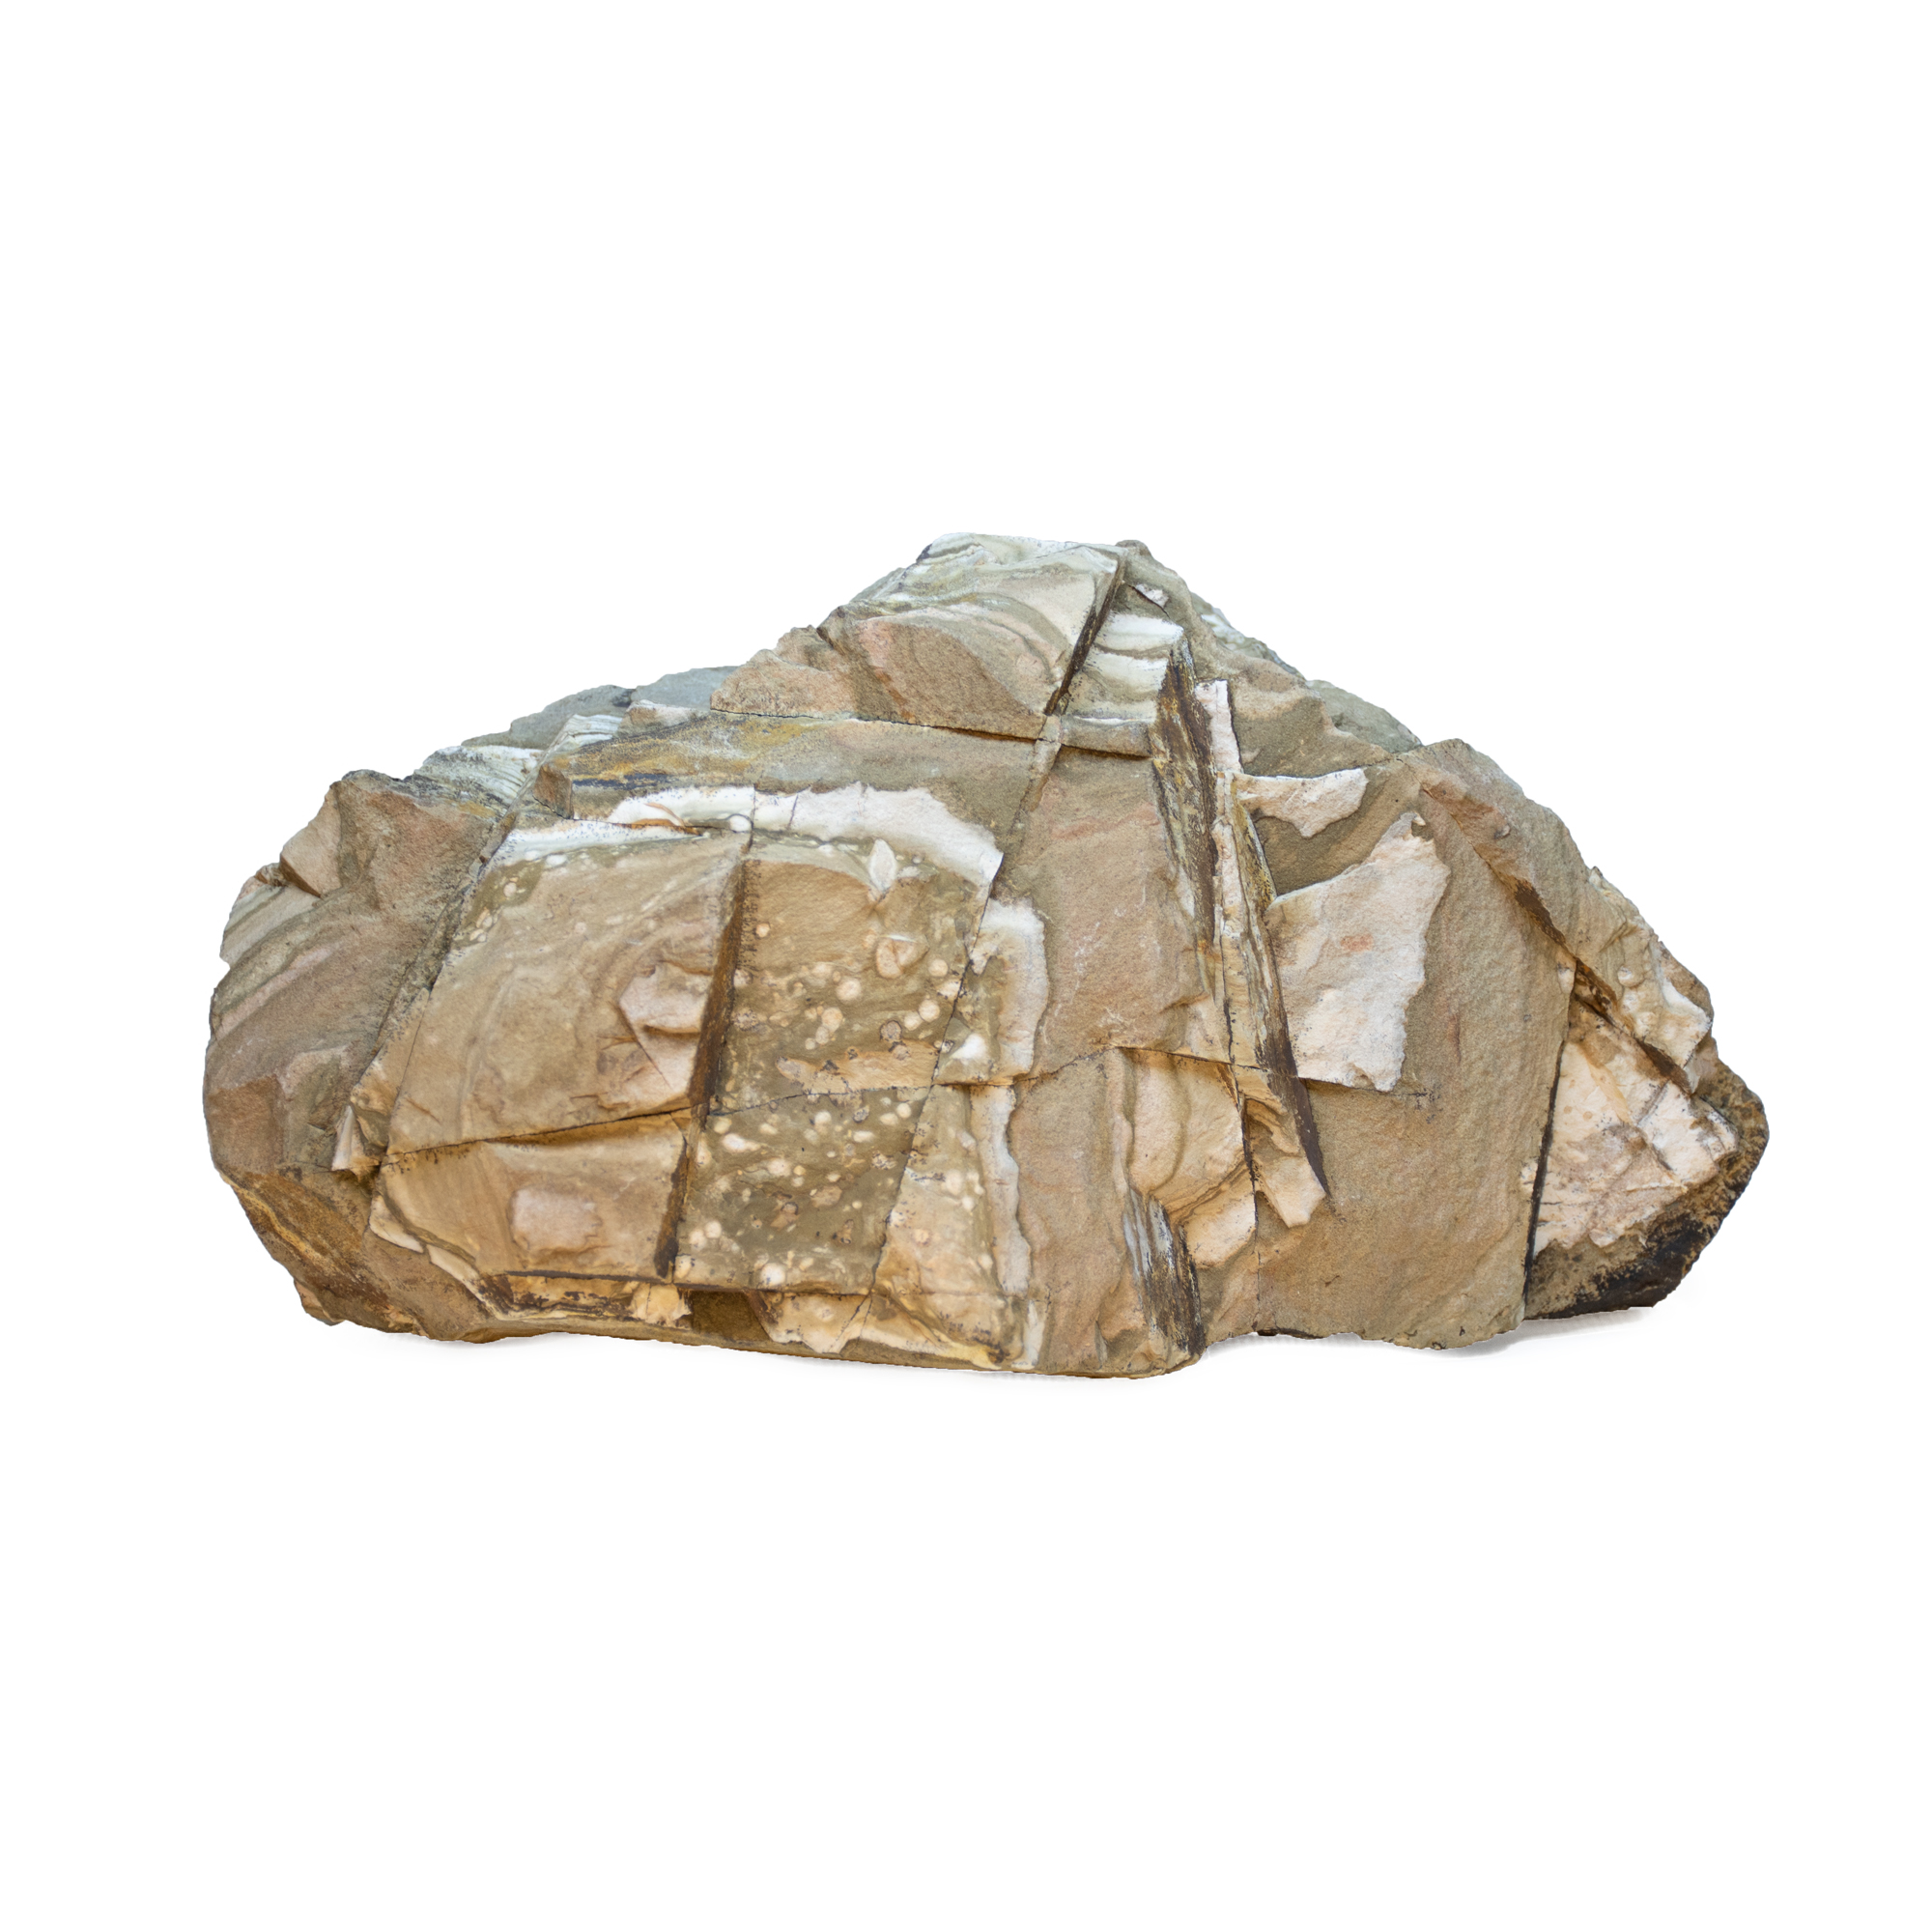  سنگ تزیینی آکواریوم مدل رسوبی کد 001